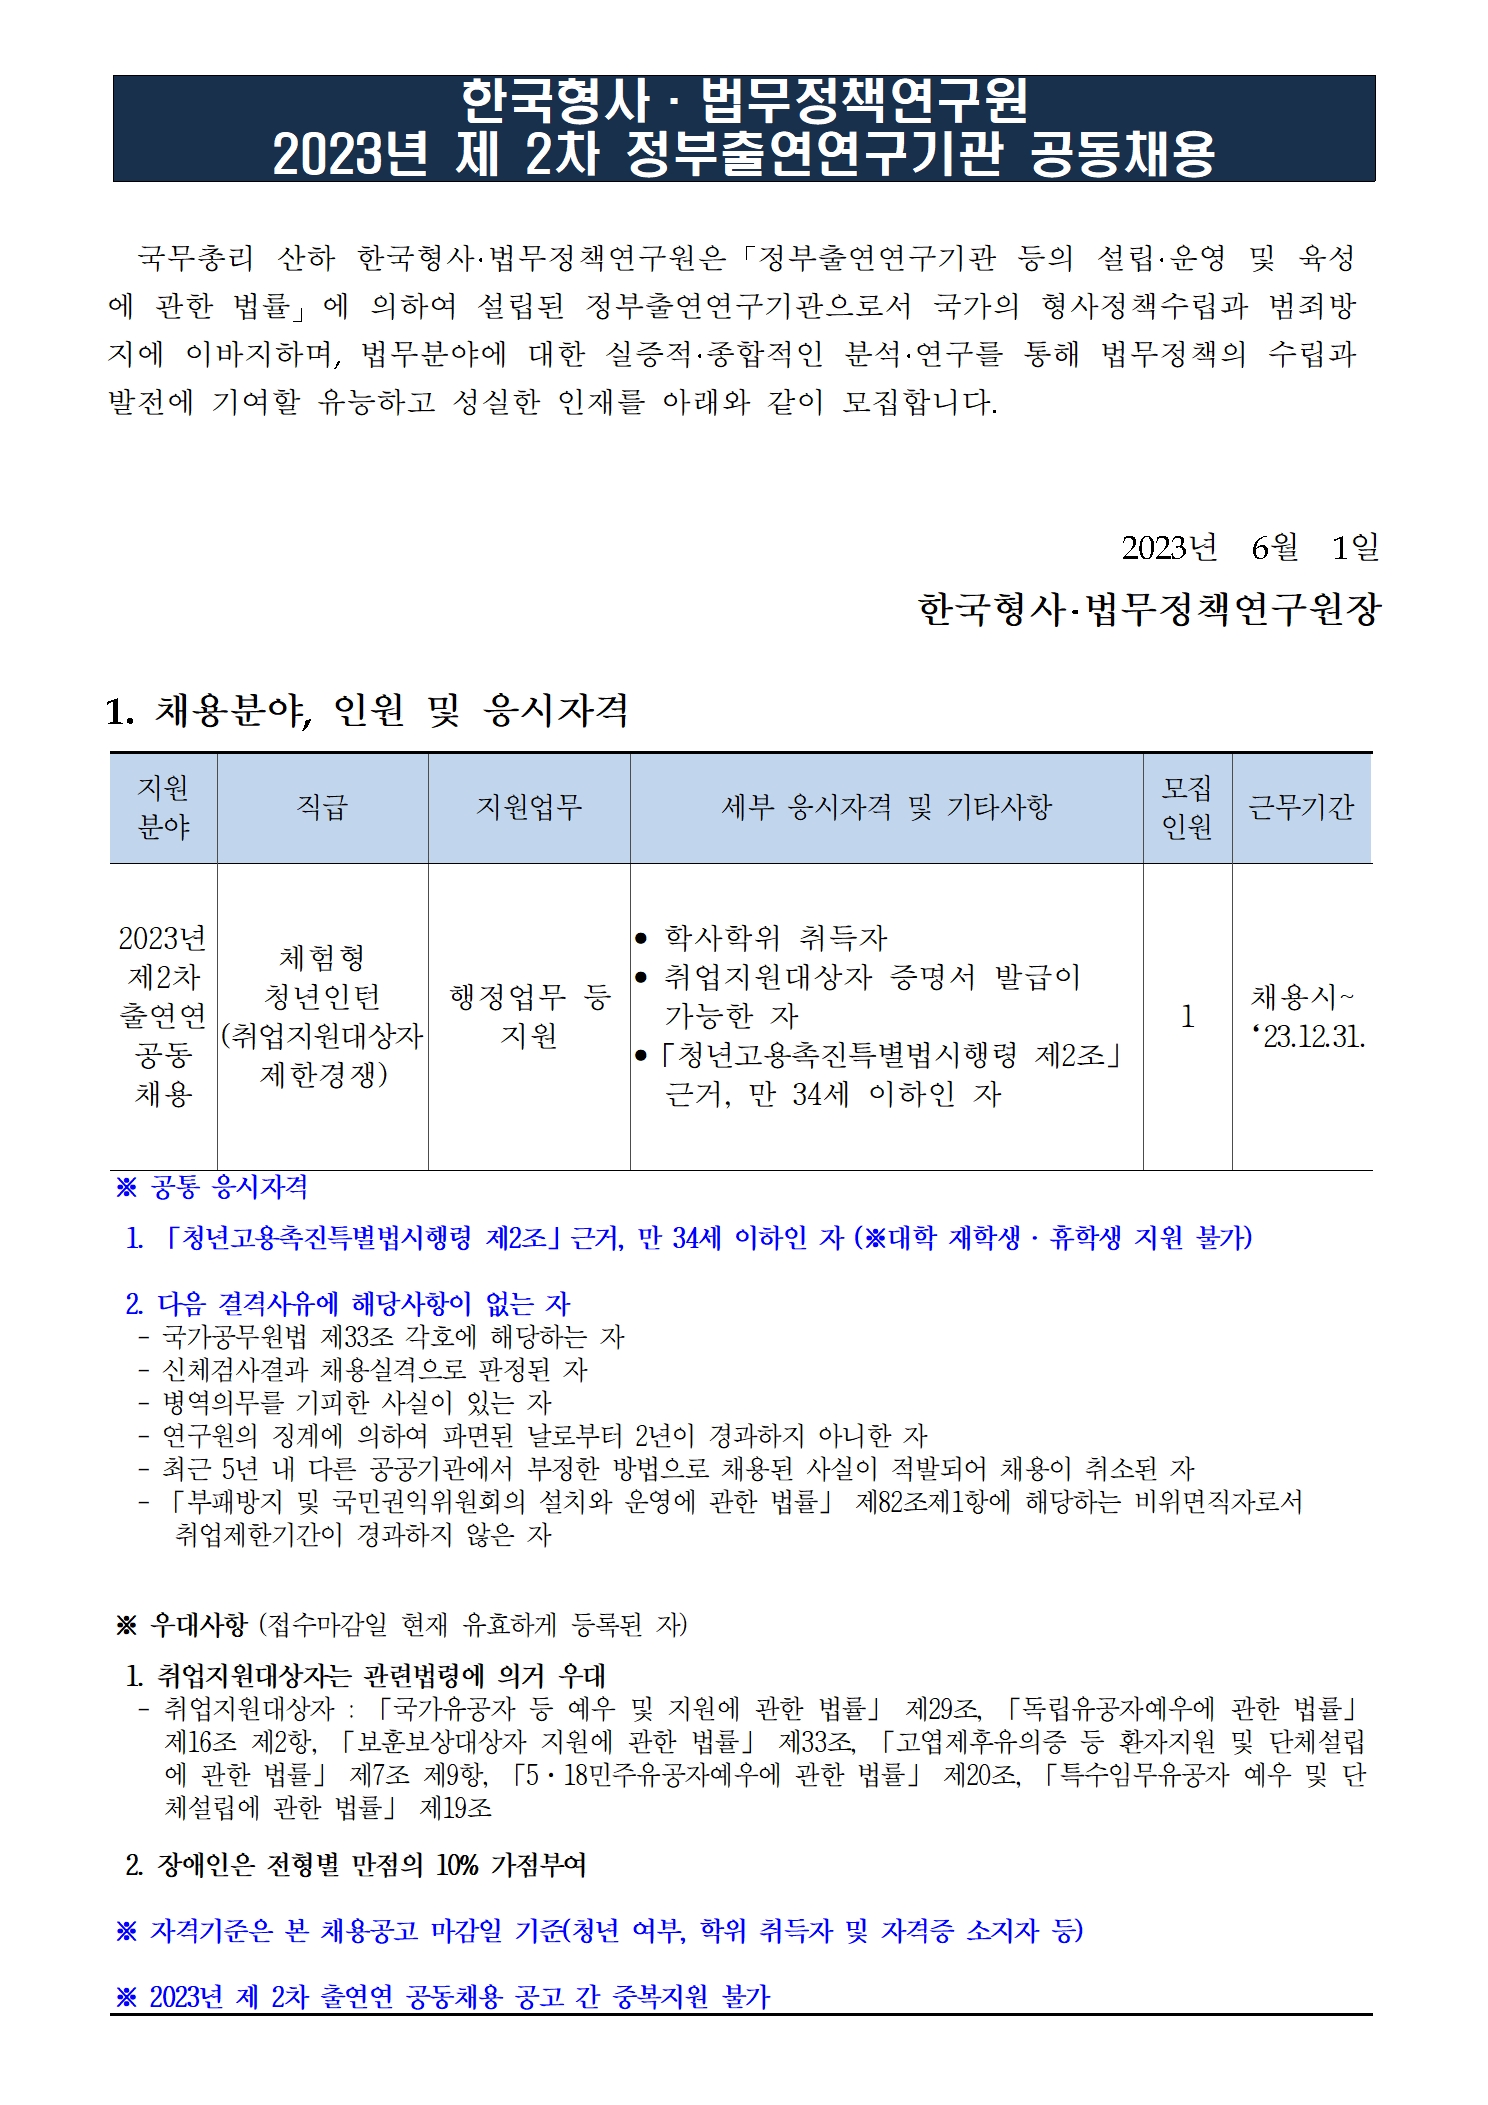 (1/3) 한국형사·법무정책연구원 2023년 제2차 정부출연연구기관 공동채용 공고문 - 자세한 내용은 하단 참조